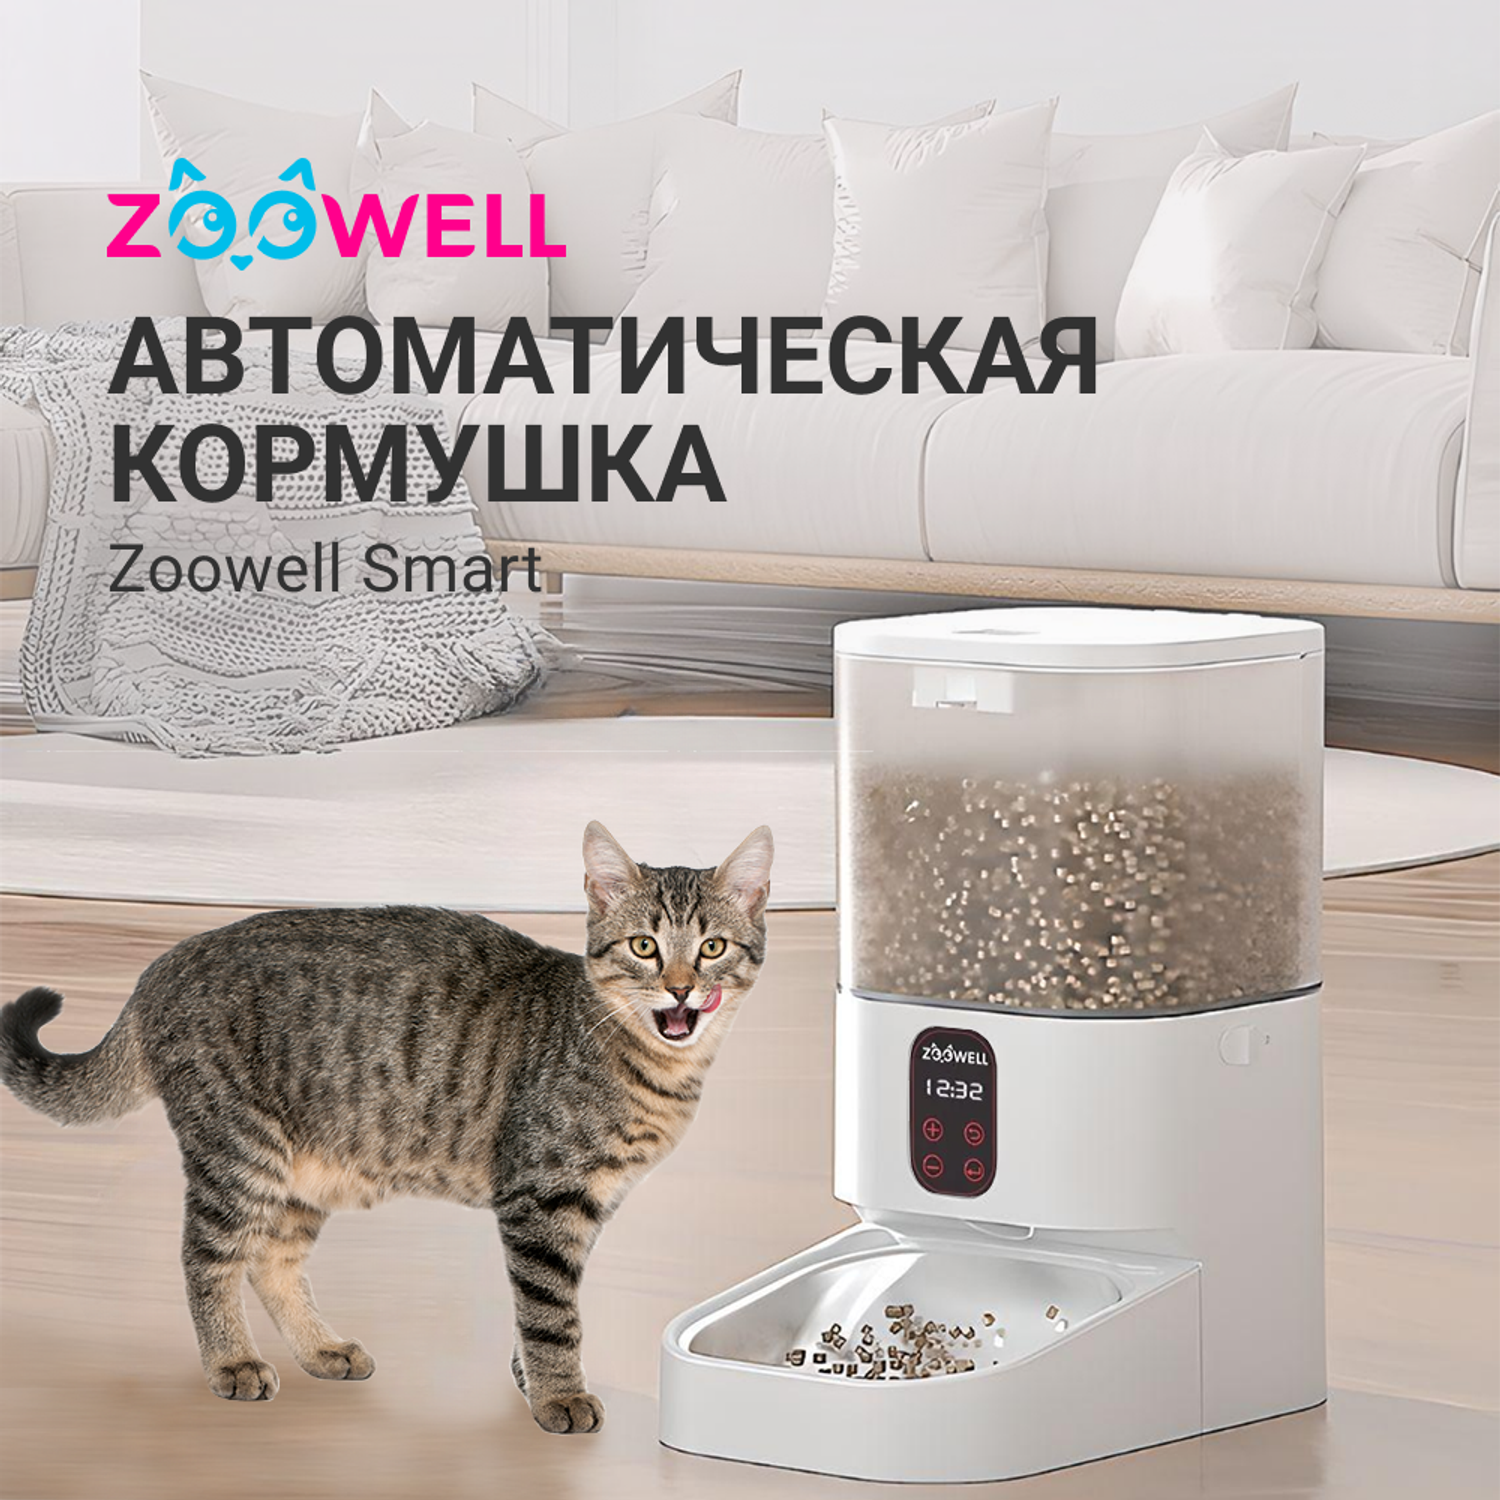 Автоматическая кормушка ZDK ZooWell Smart для сухого корма базовая версия 5л - фото 2